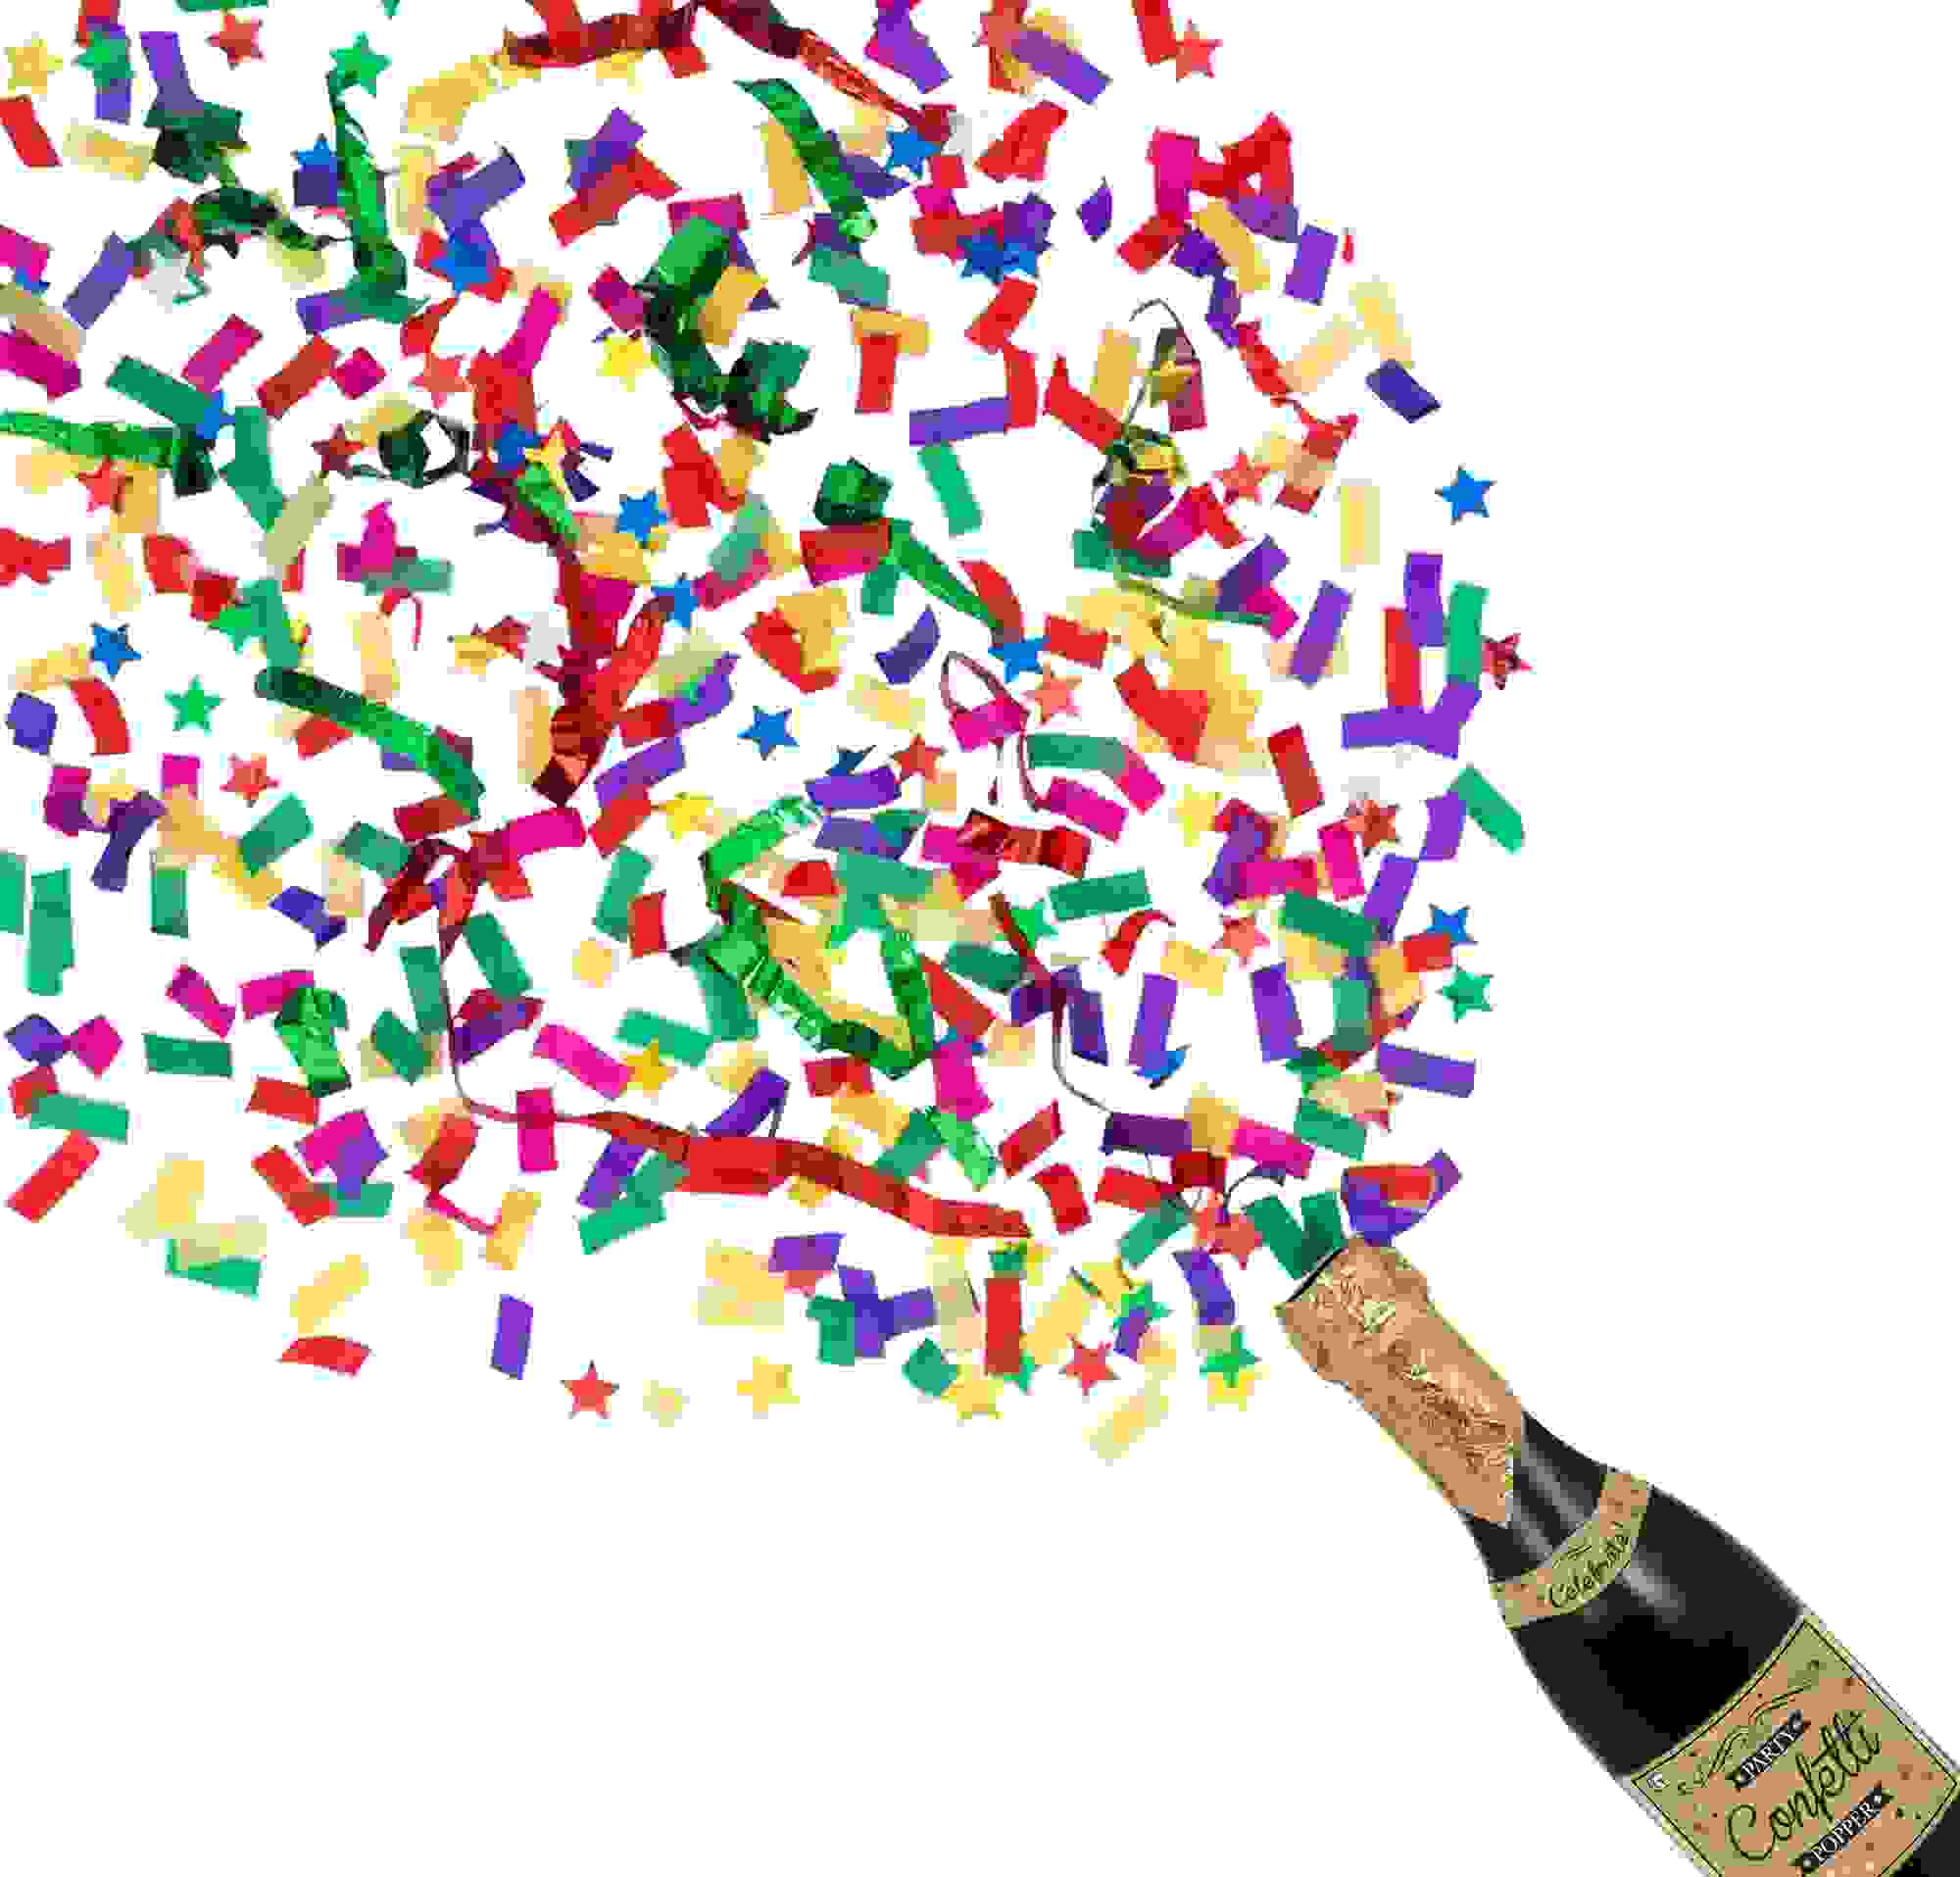 Champagne Bottle Confetti Popper 3 1/2in x 12 1/2in